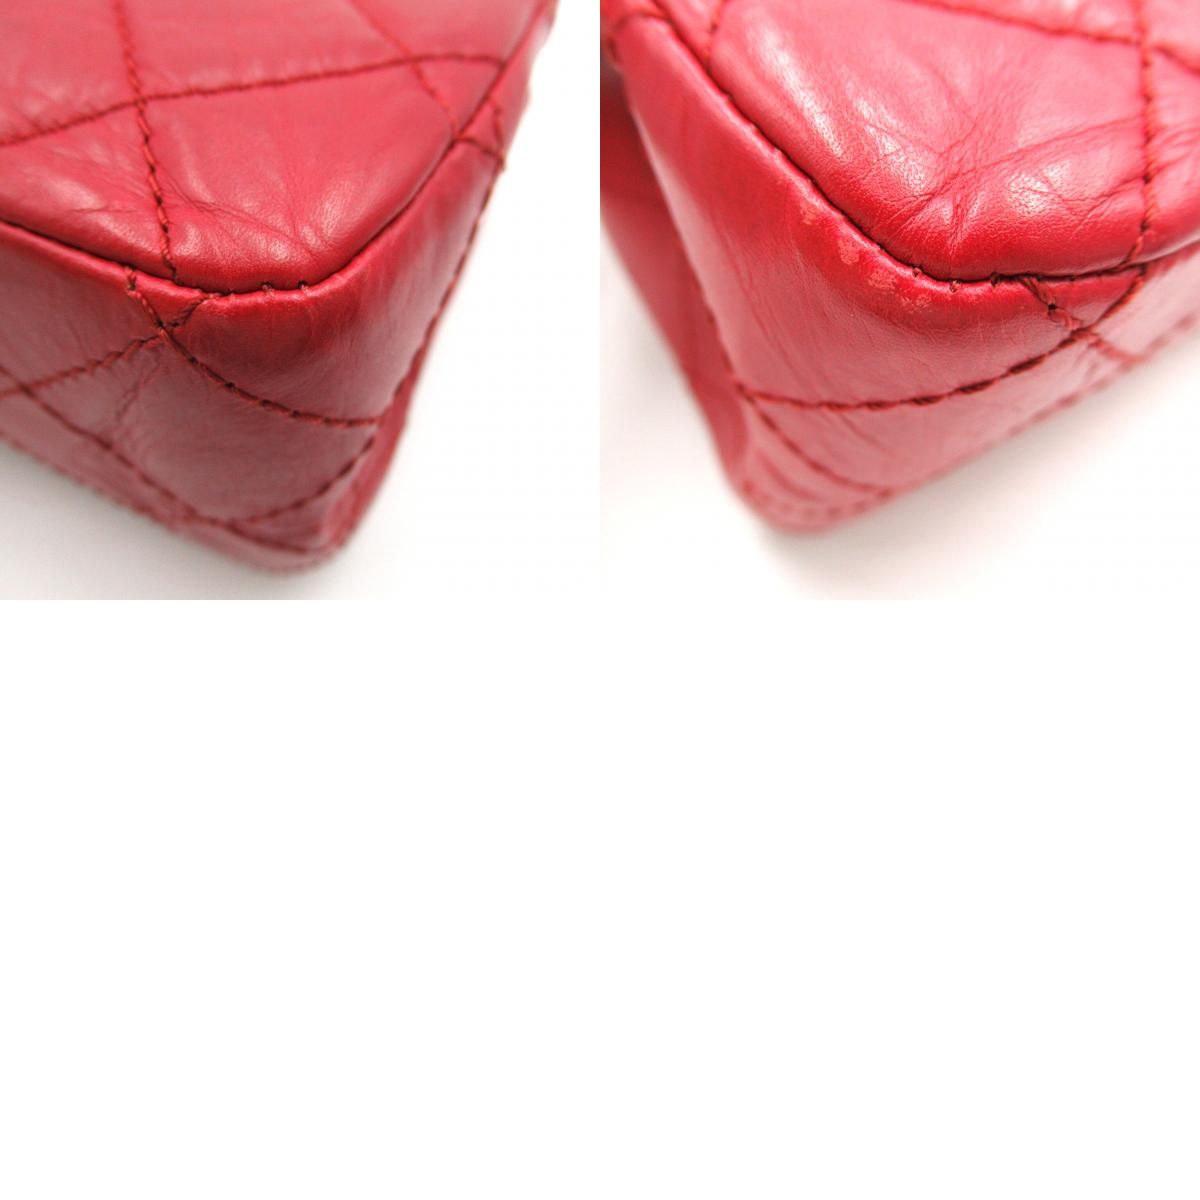 CHANEL 2.55 Chain Shoulder Bag  Red 2.55 Chain Shoulder